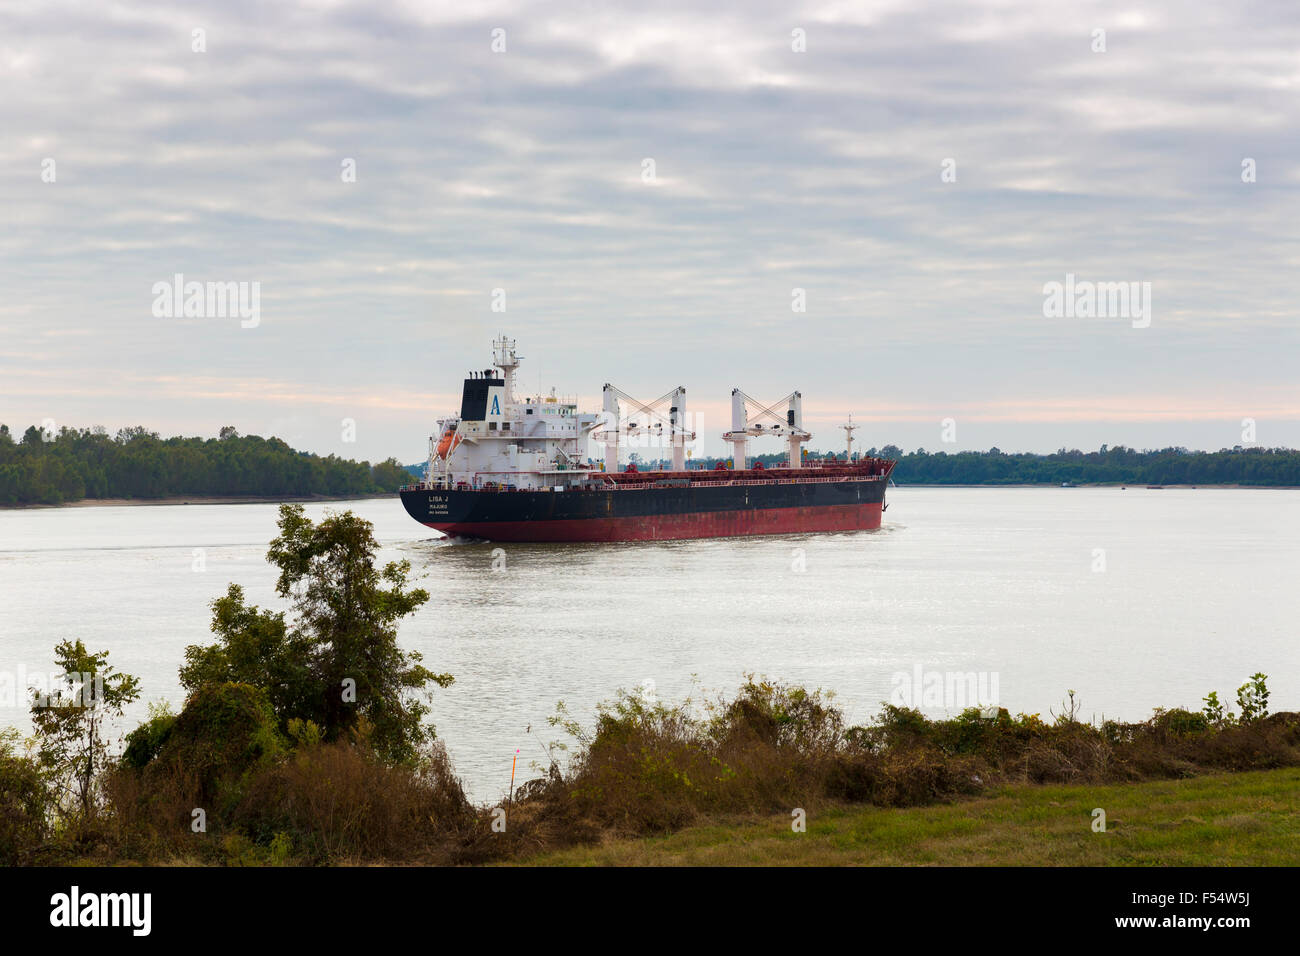 El granelero 'Lisa J Majuro" registrada en las Islas Marshall, el transporte de carga a lo largo del Río Mississippi, Louisiana, EE.UU. Foto de stock